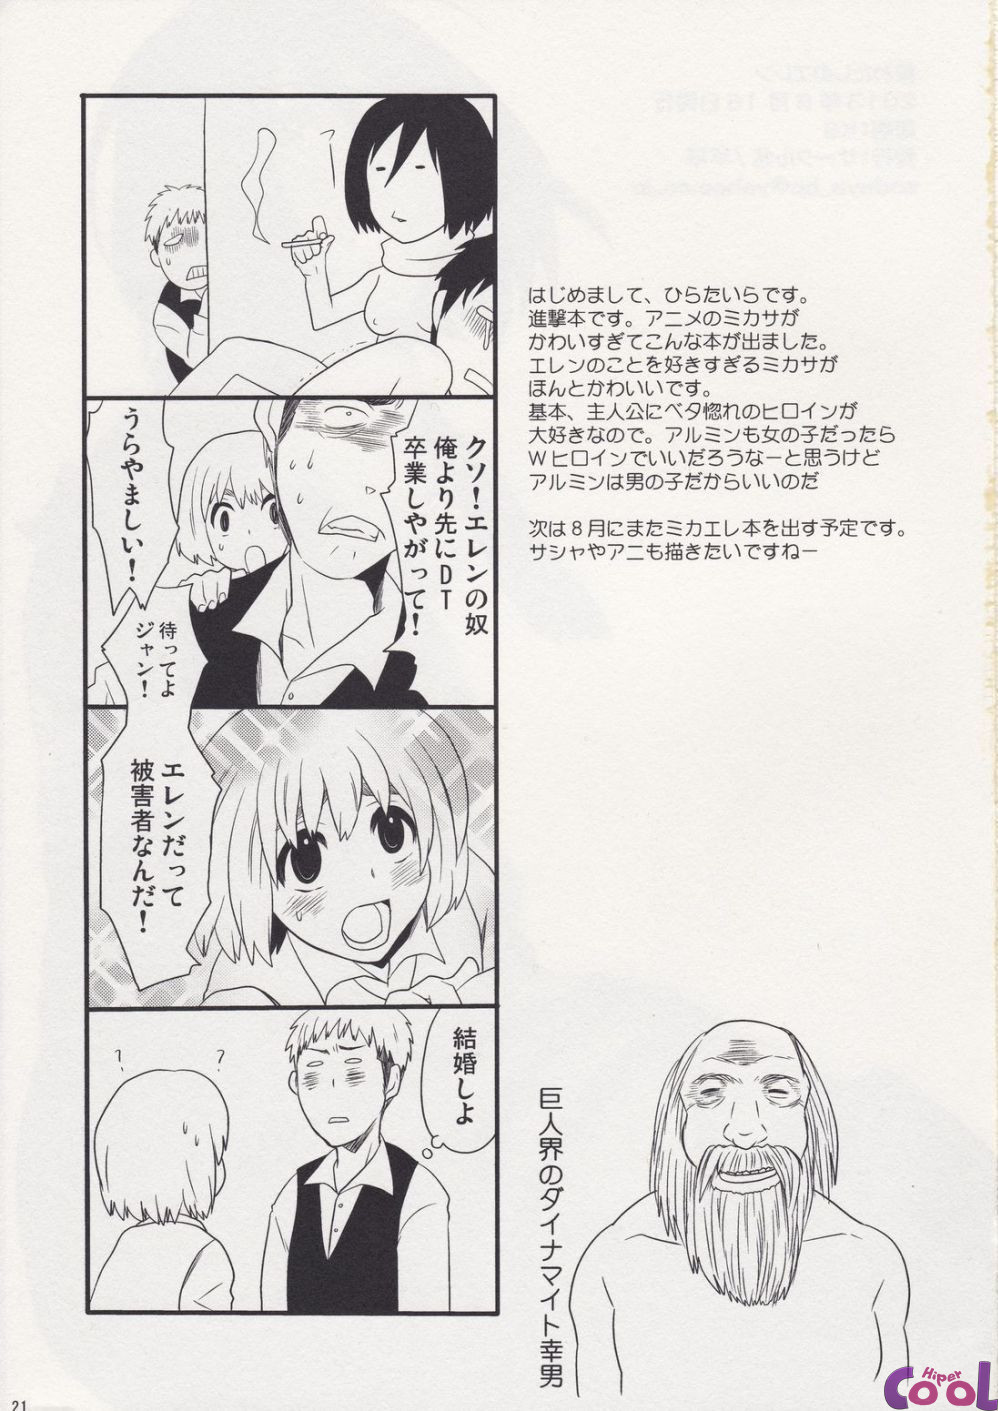 watashi-no-eren-chapter-01-page-21.jpg